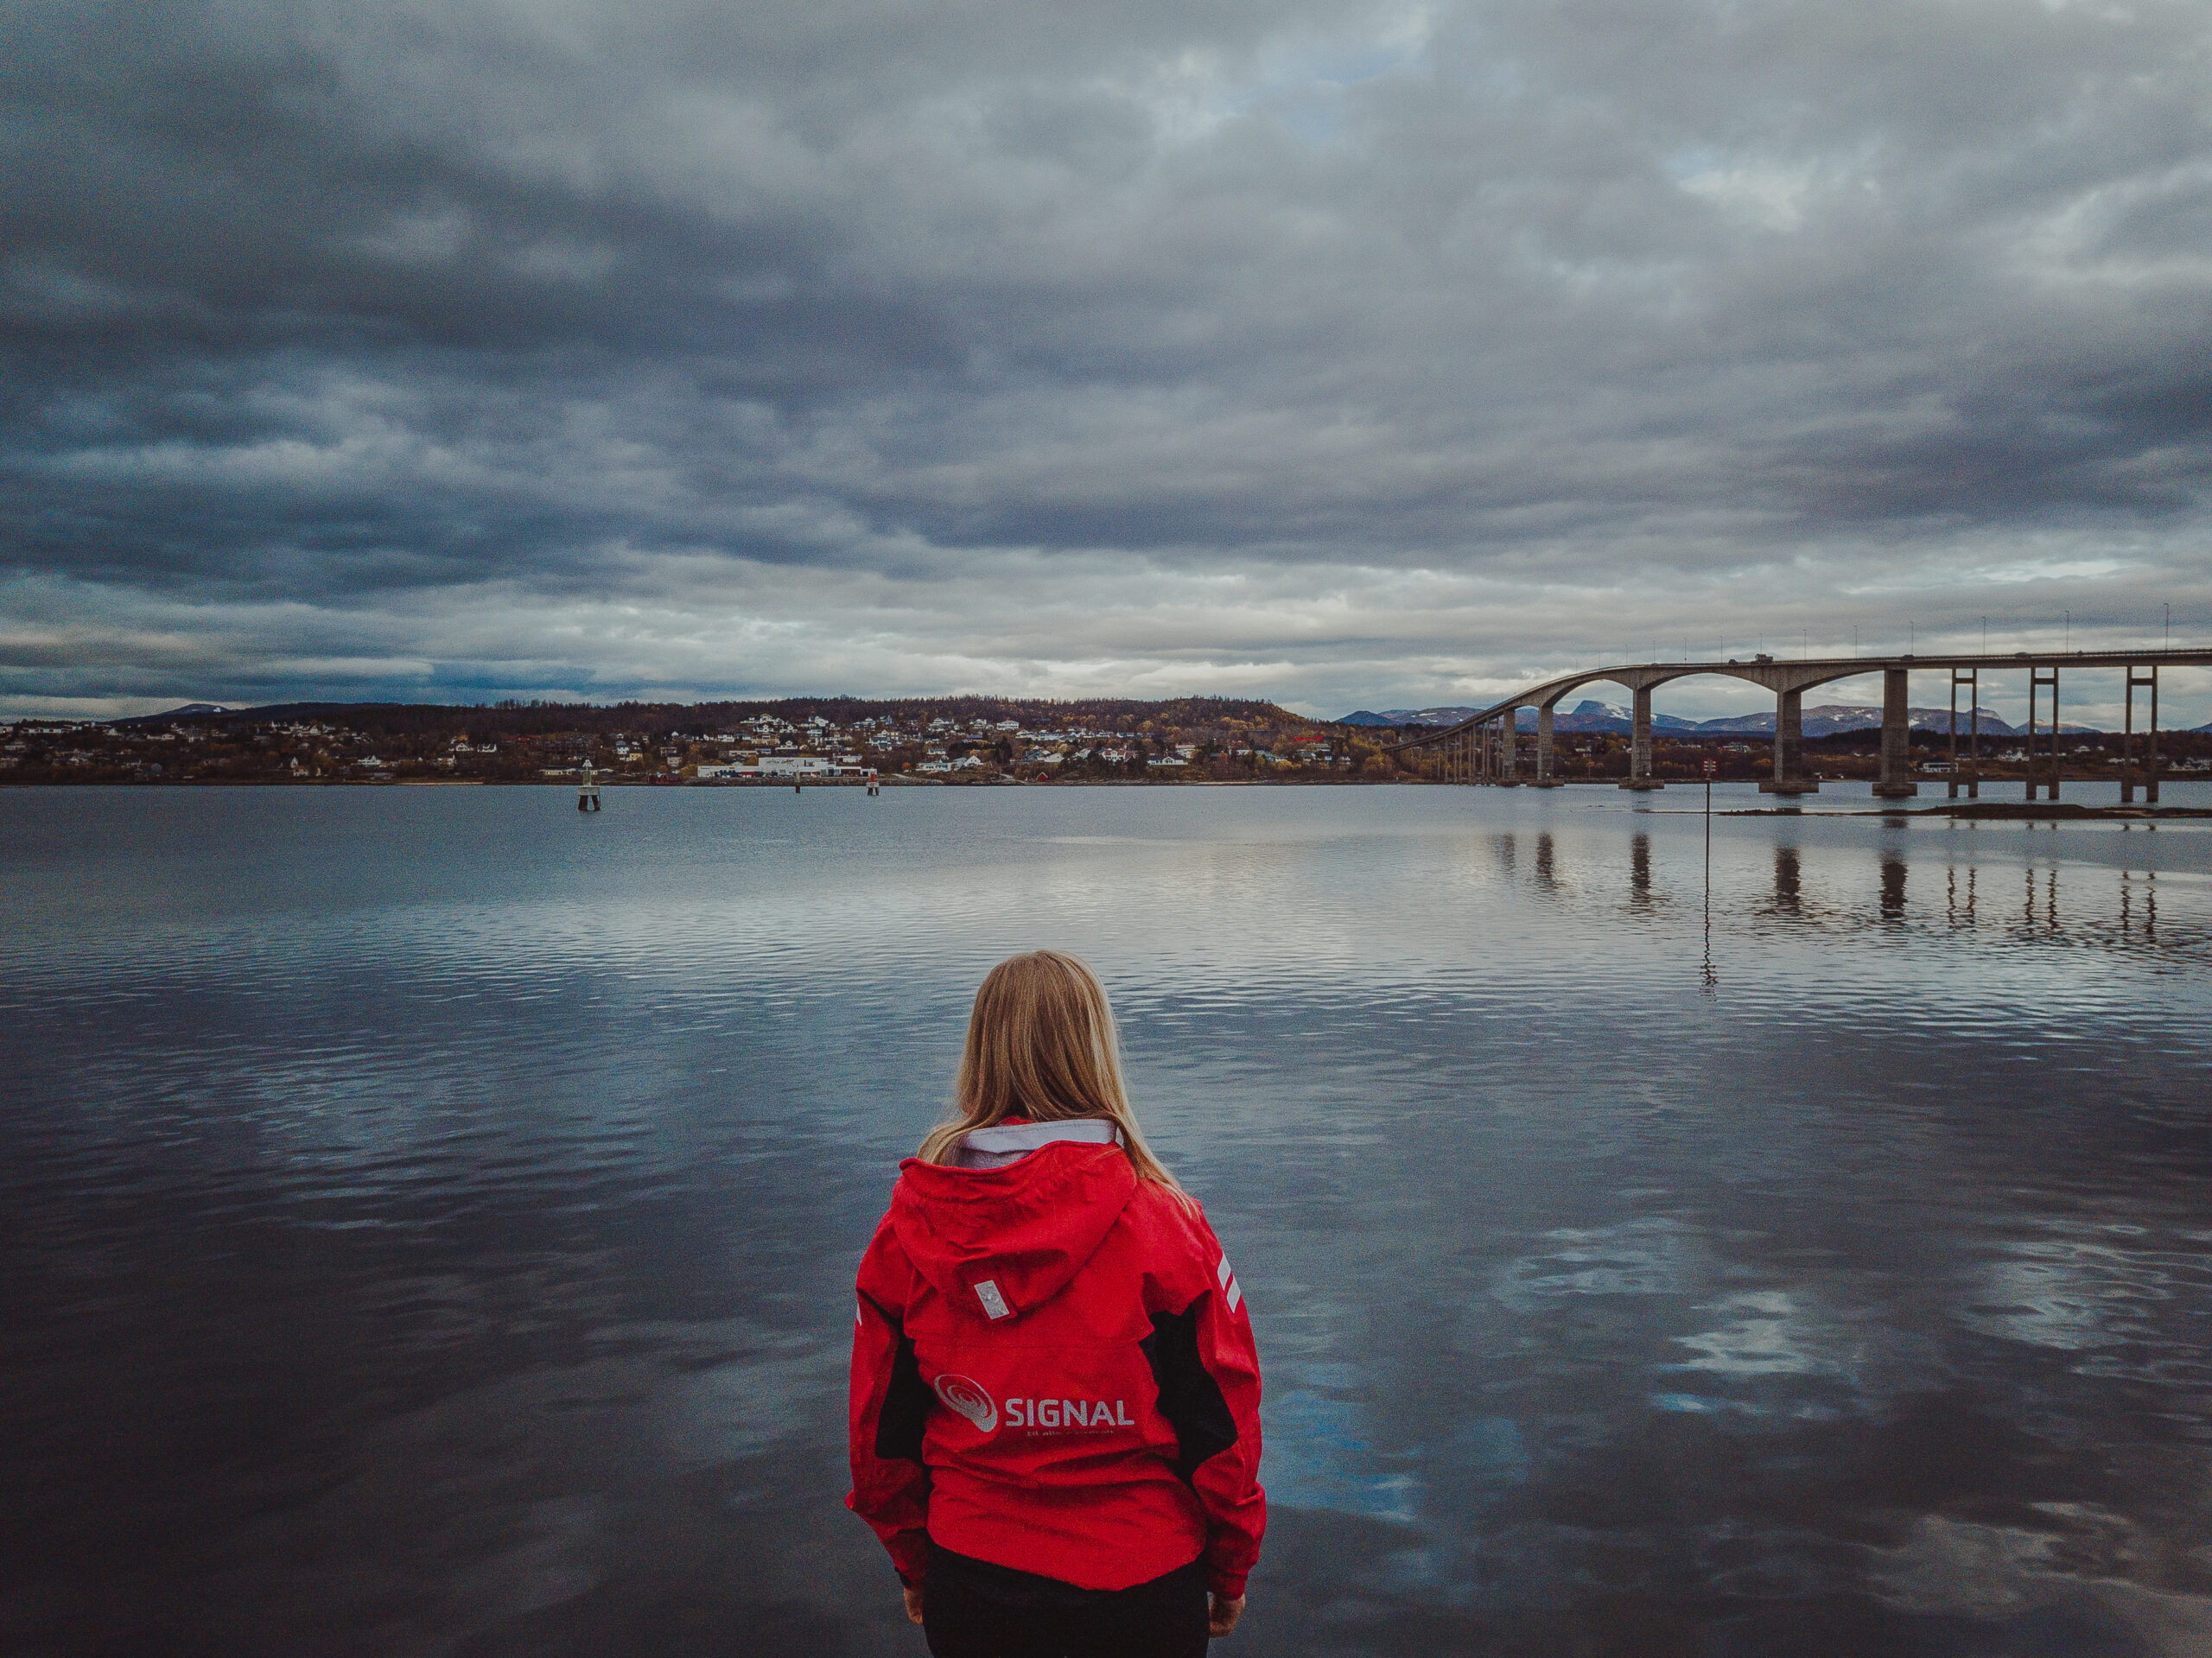 Jente i rød Signal-jakke ser ut over havet og brua mellom Finnsnes og Silsand